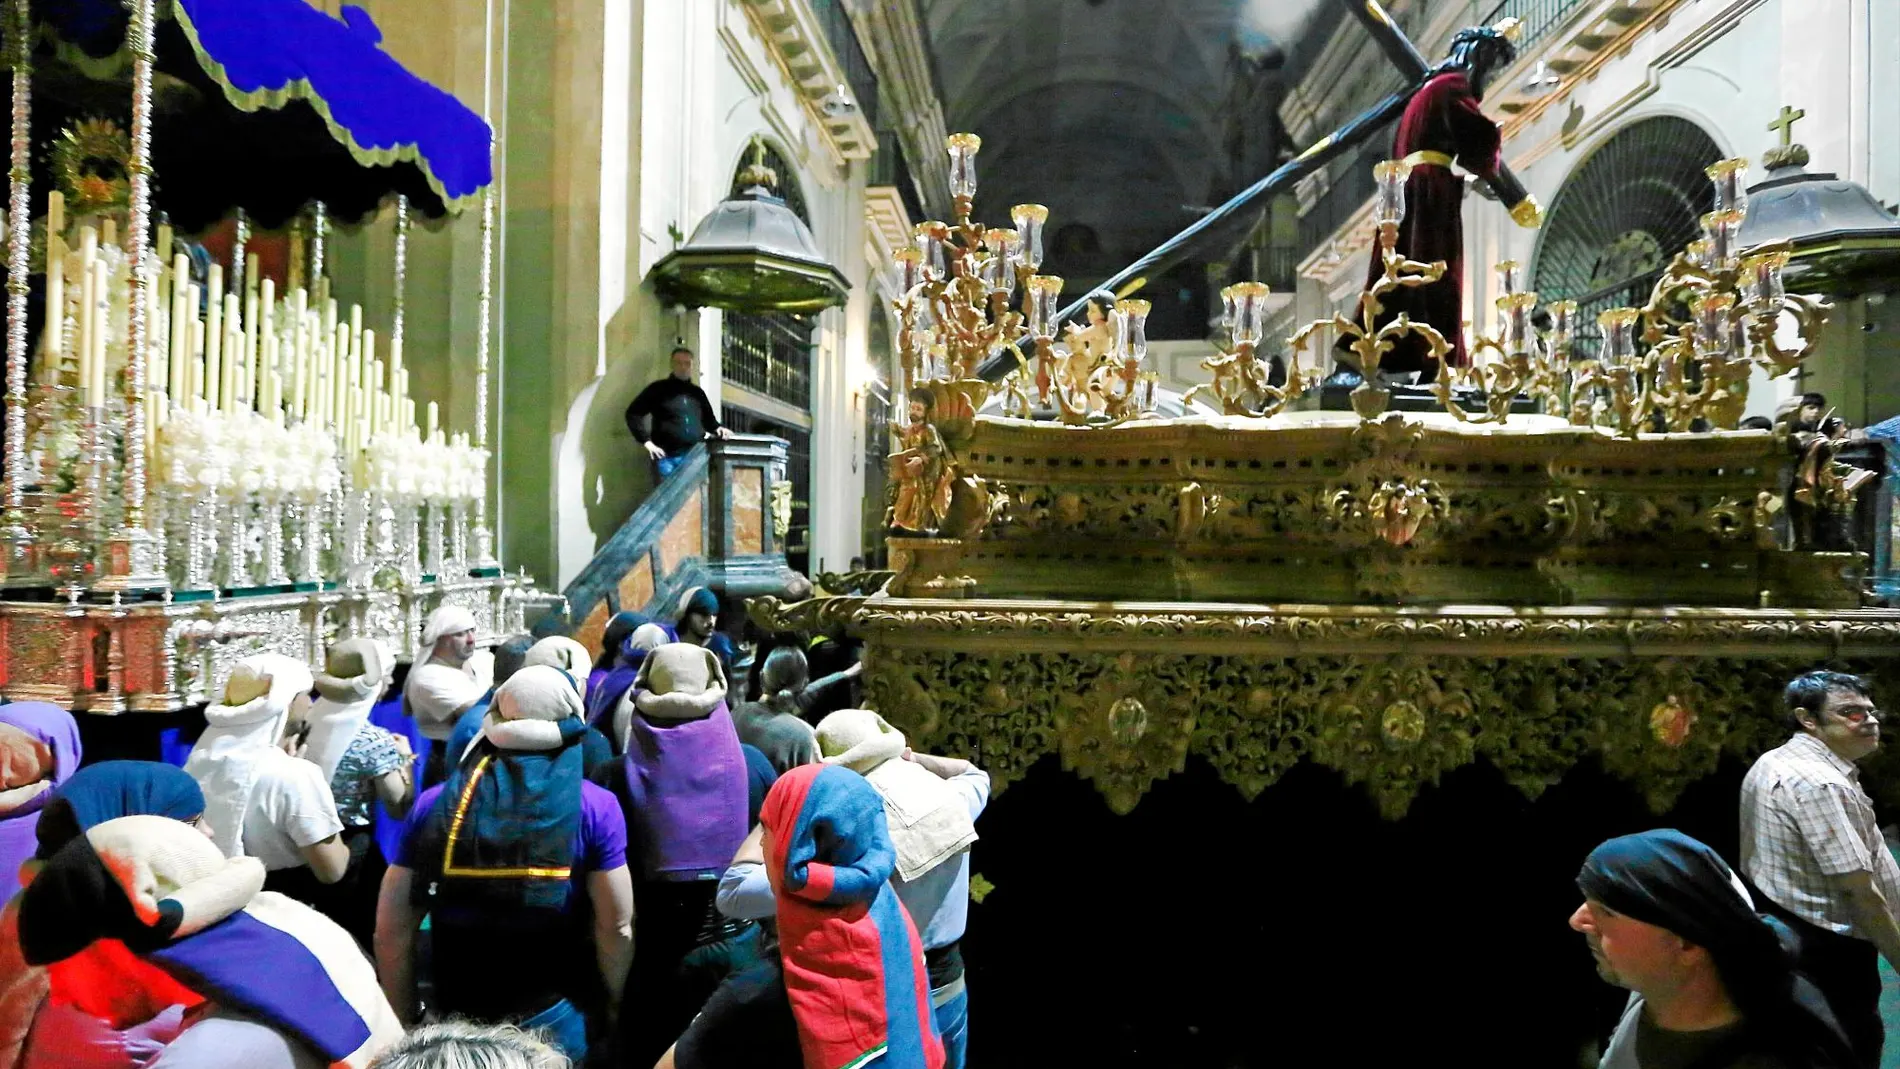 La parroquia de Nuestra Señora del Carmen y San Luis Obispo de Madrid fue la sede en donde tuvo lugar el retranqueo de las imágenes. Foto: Cristina Bejarano